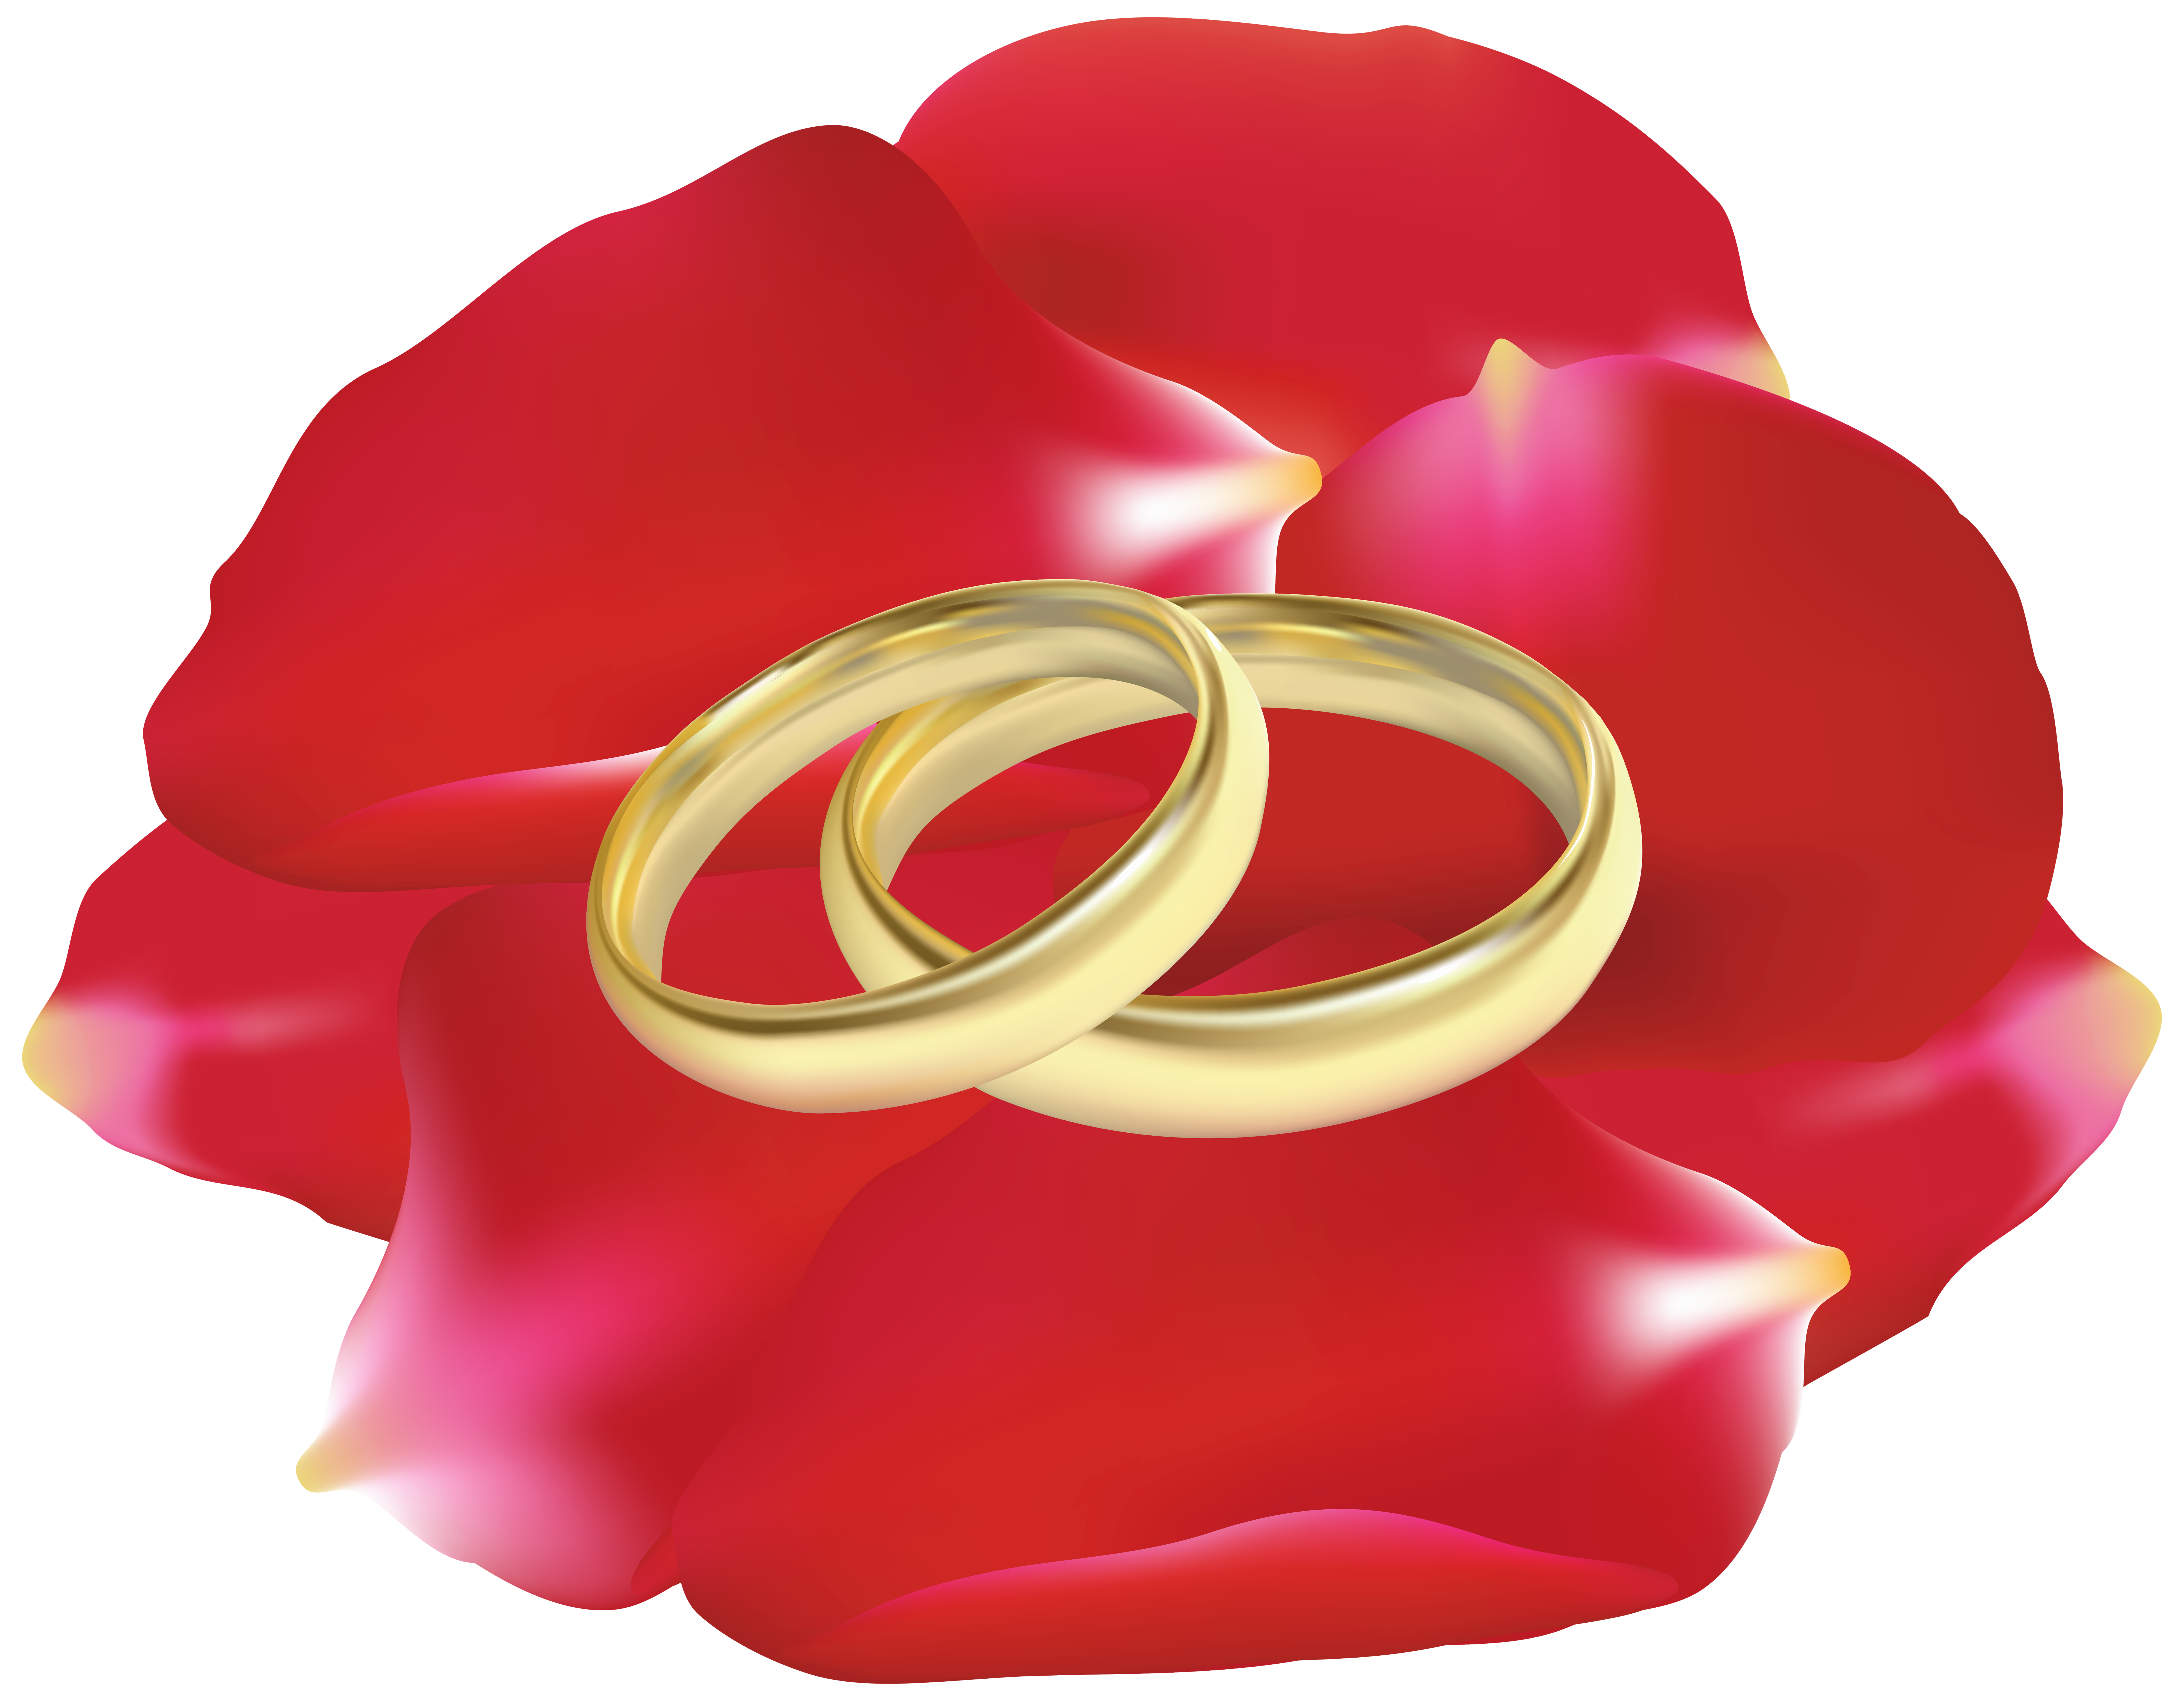 Rose clipart rose petal. Wedding rings in petals